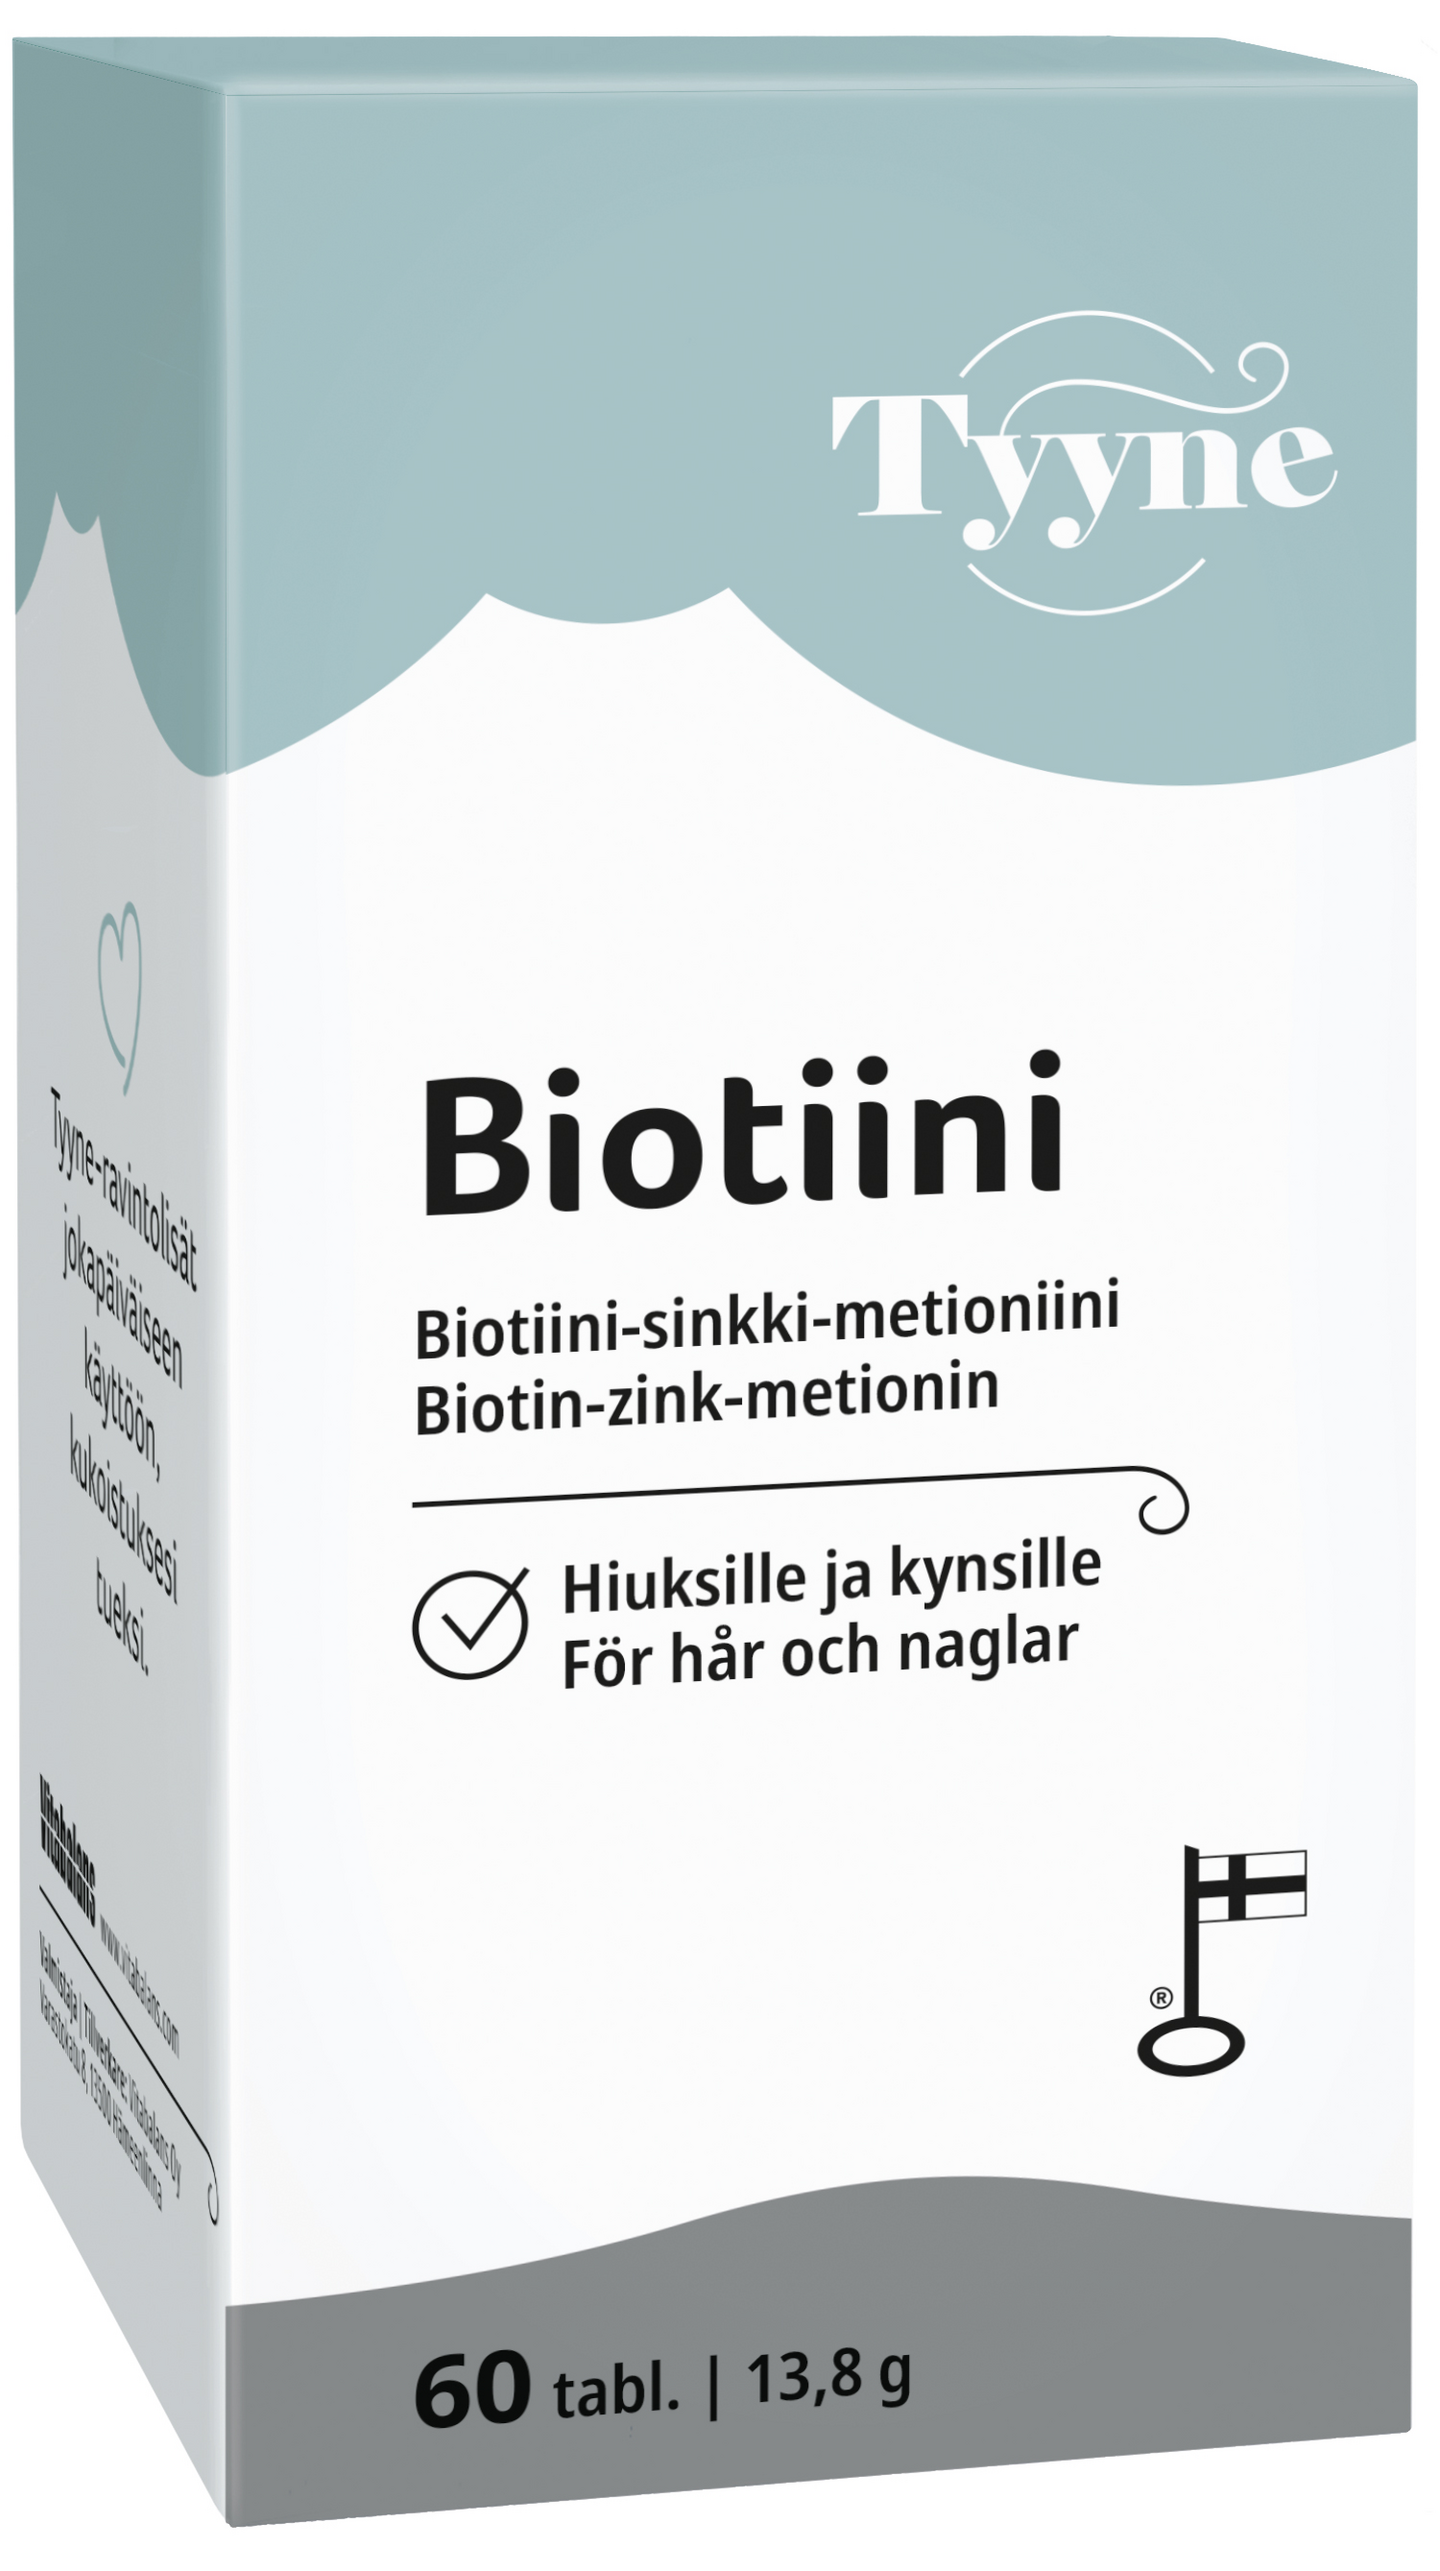 Vitabalans Tyyne Biotiini biotiini-sinkki-metioniini 60 tabl 32g